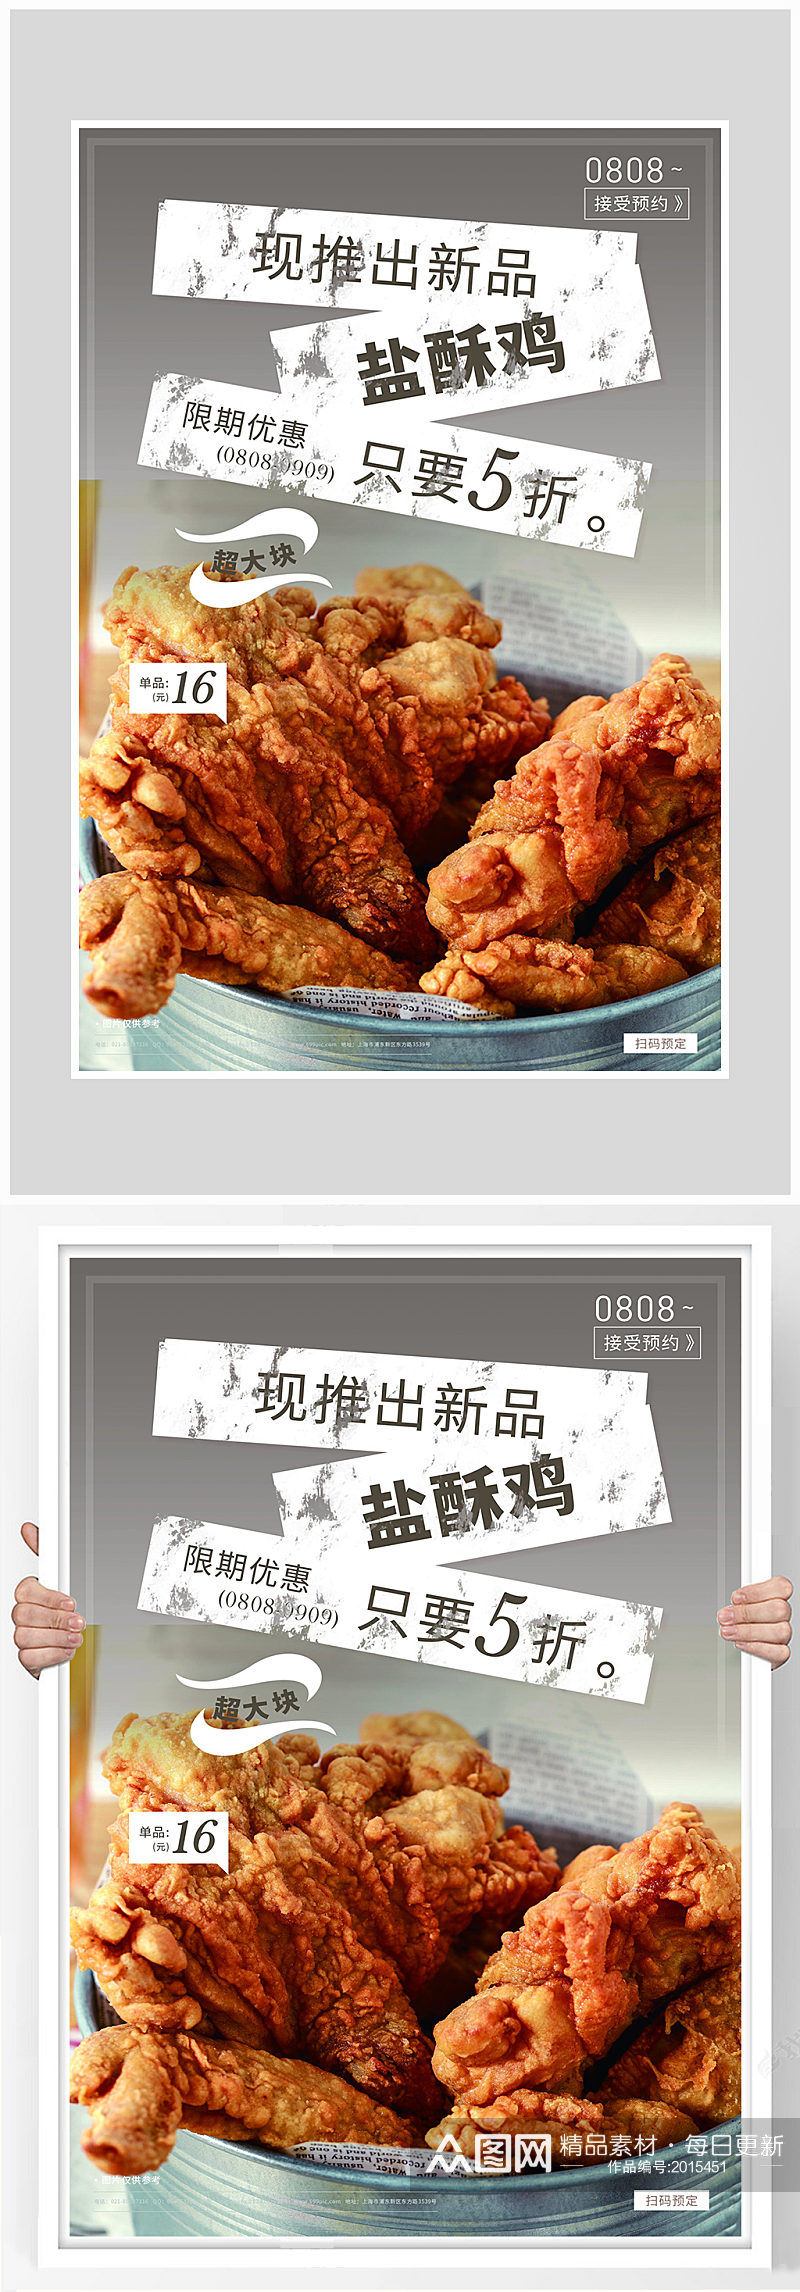 创意质感盐酥鸡烤鸡海报设计素材